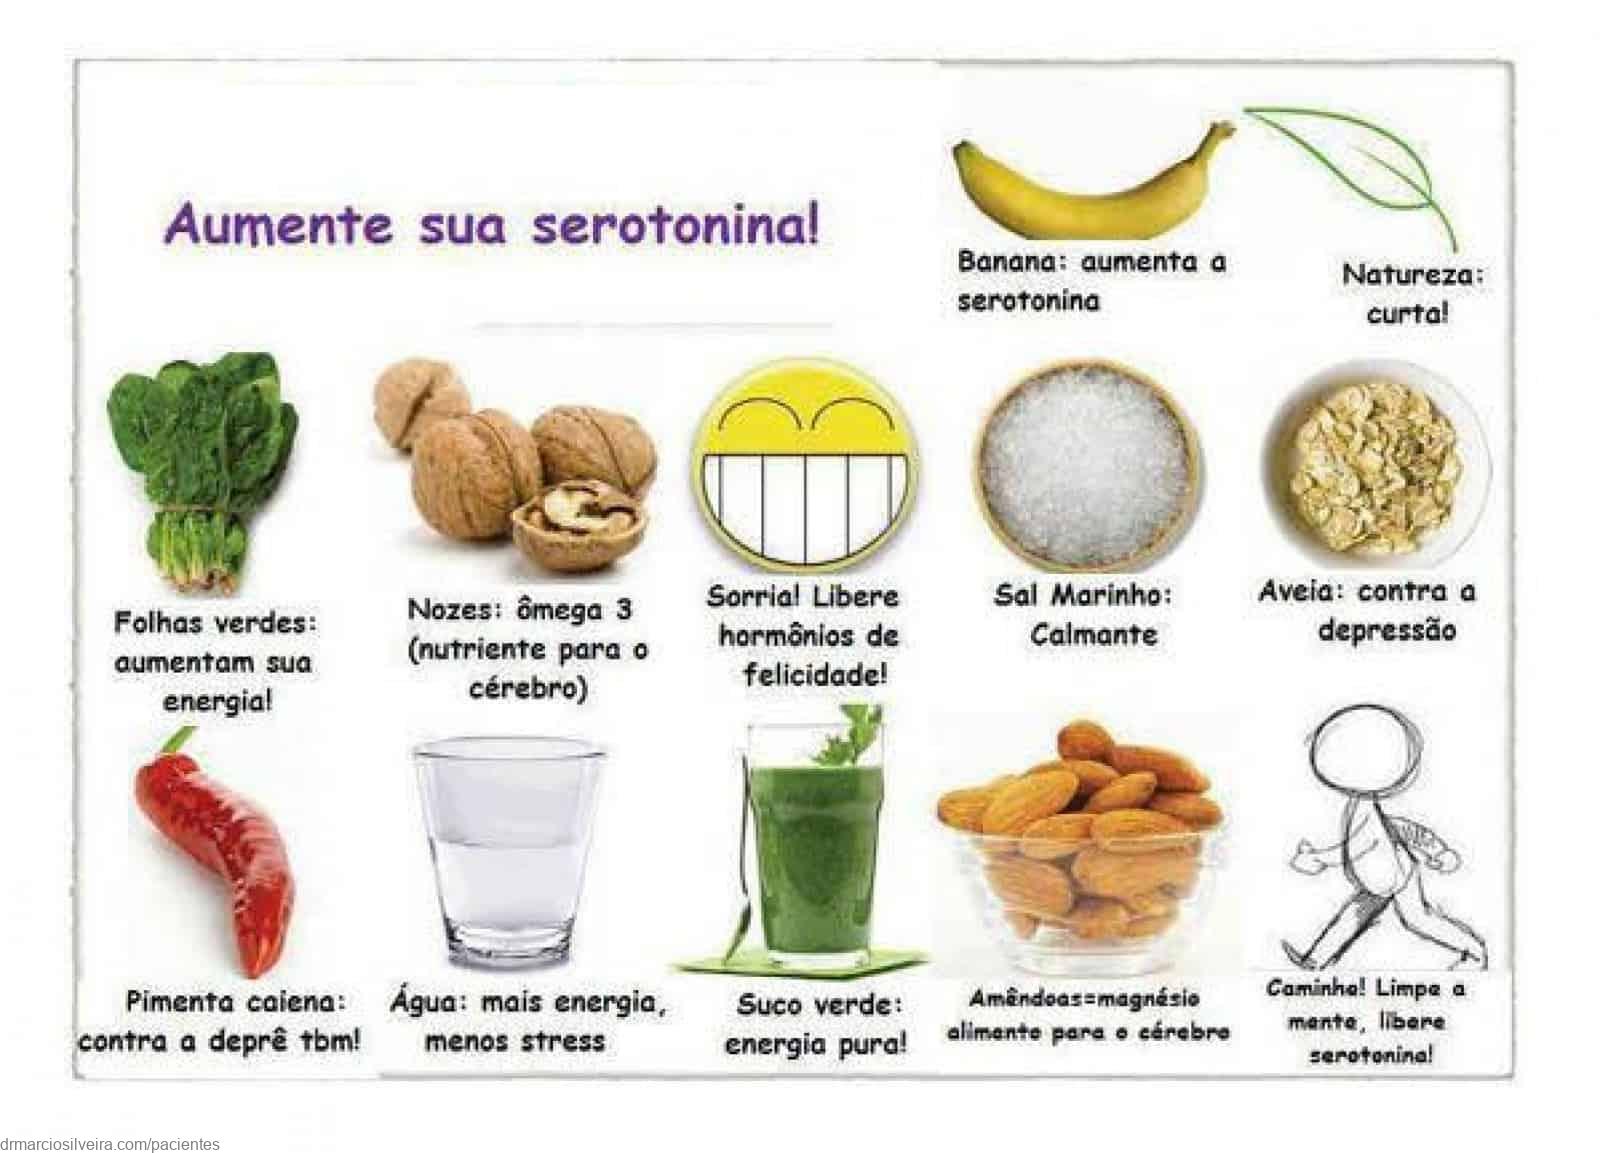 Alimentos para aumentar la serotonina (de forma natural)